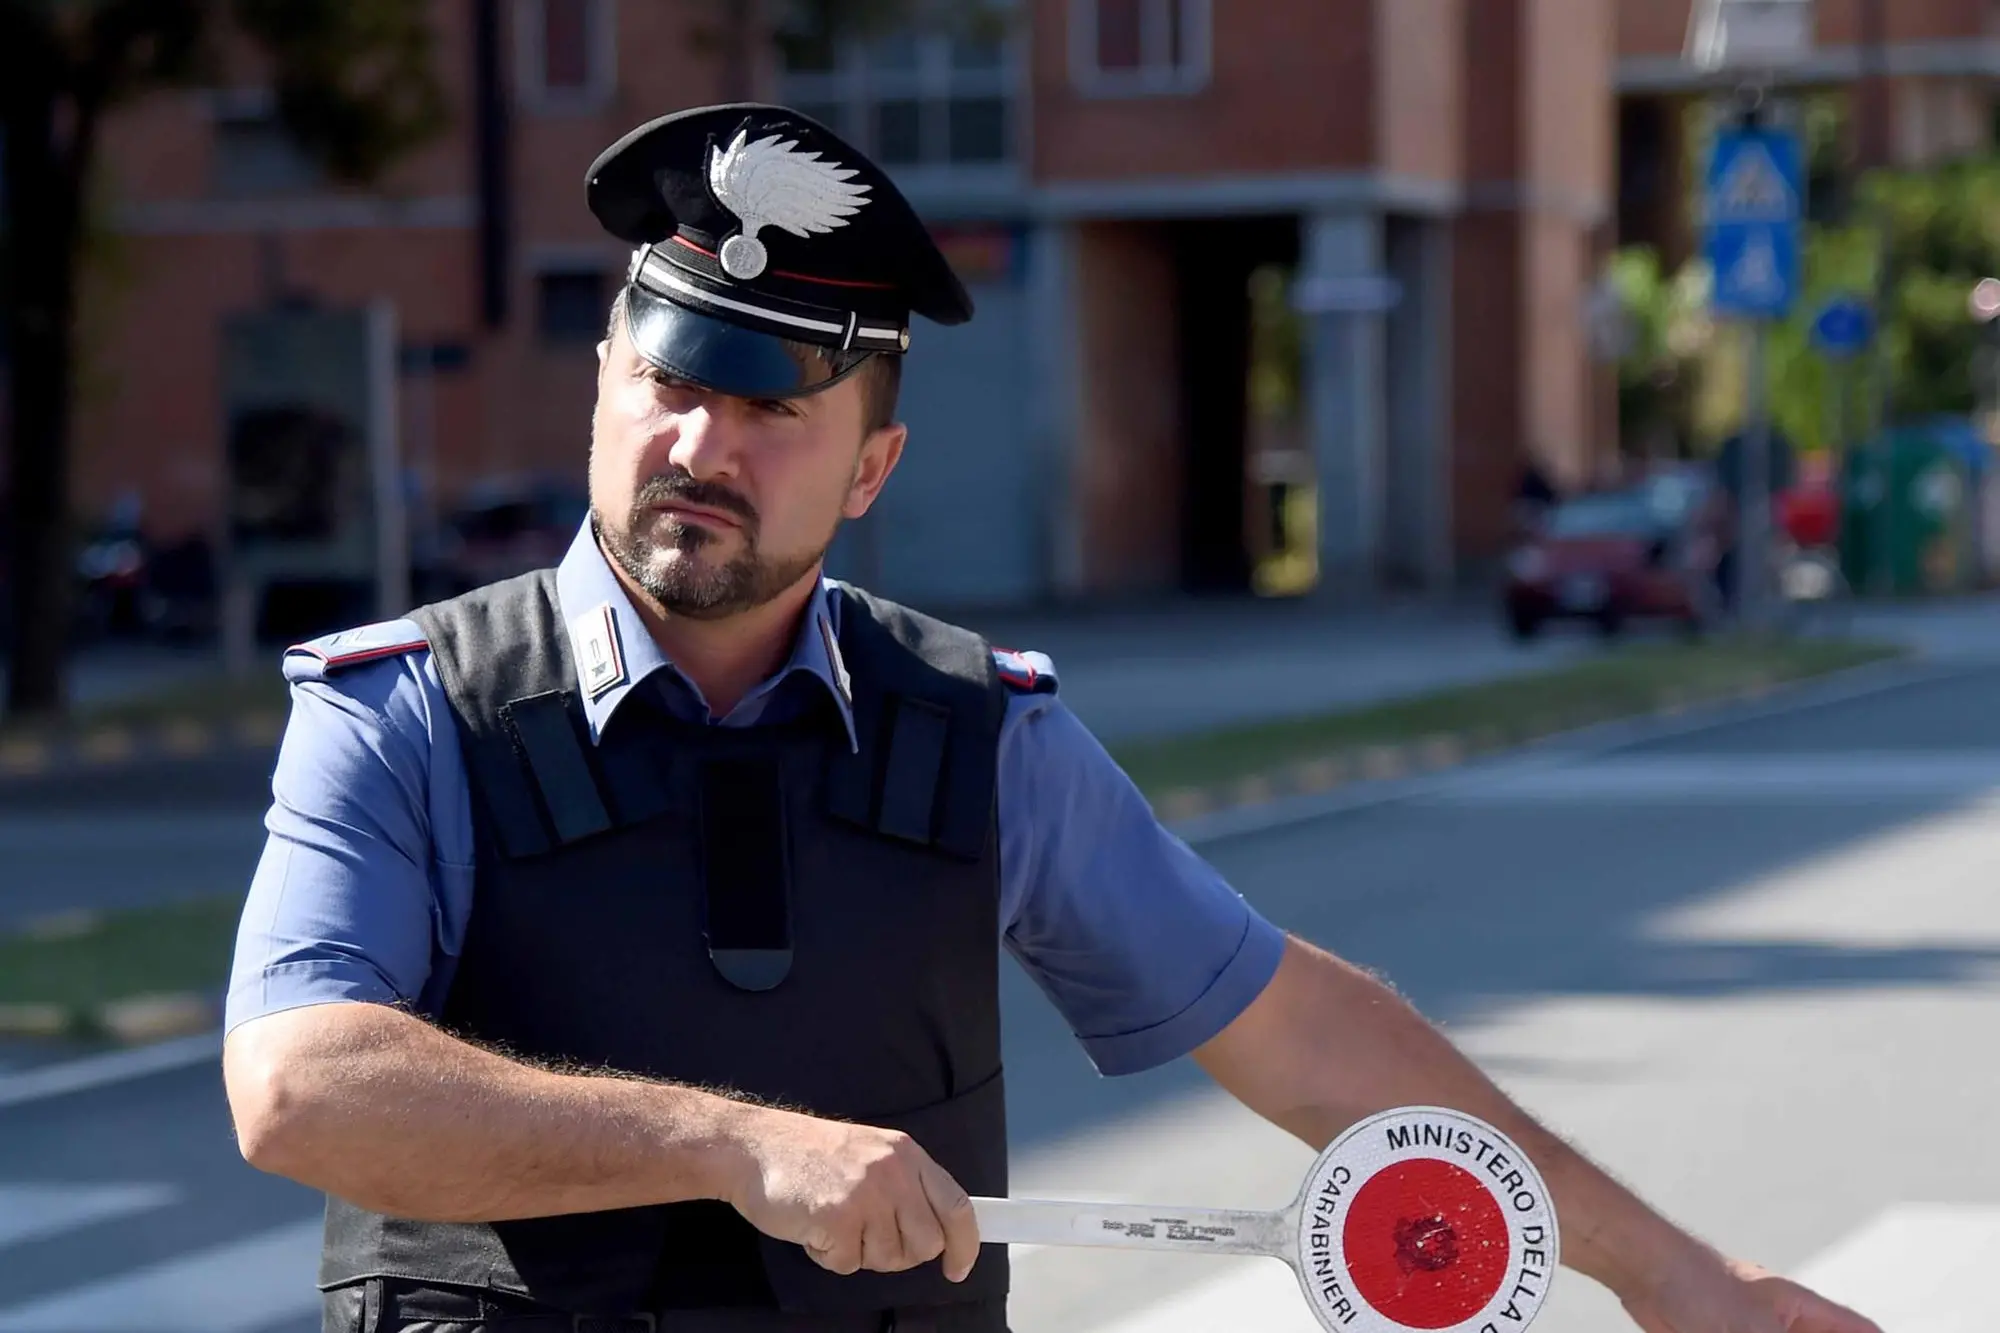 Carabinieri (Archivio L'Unione Sarda)